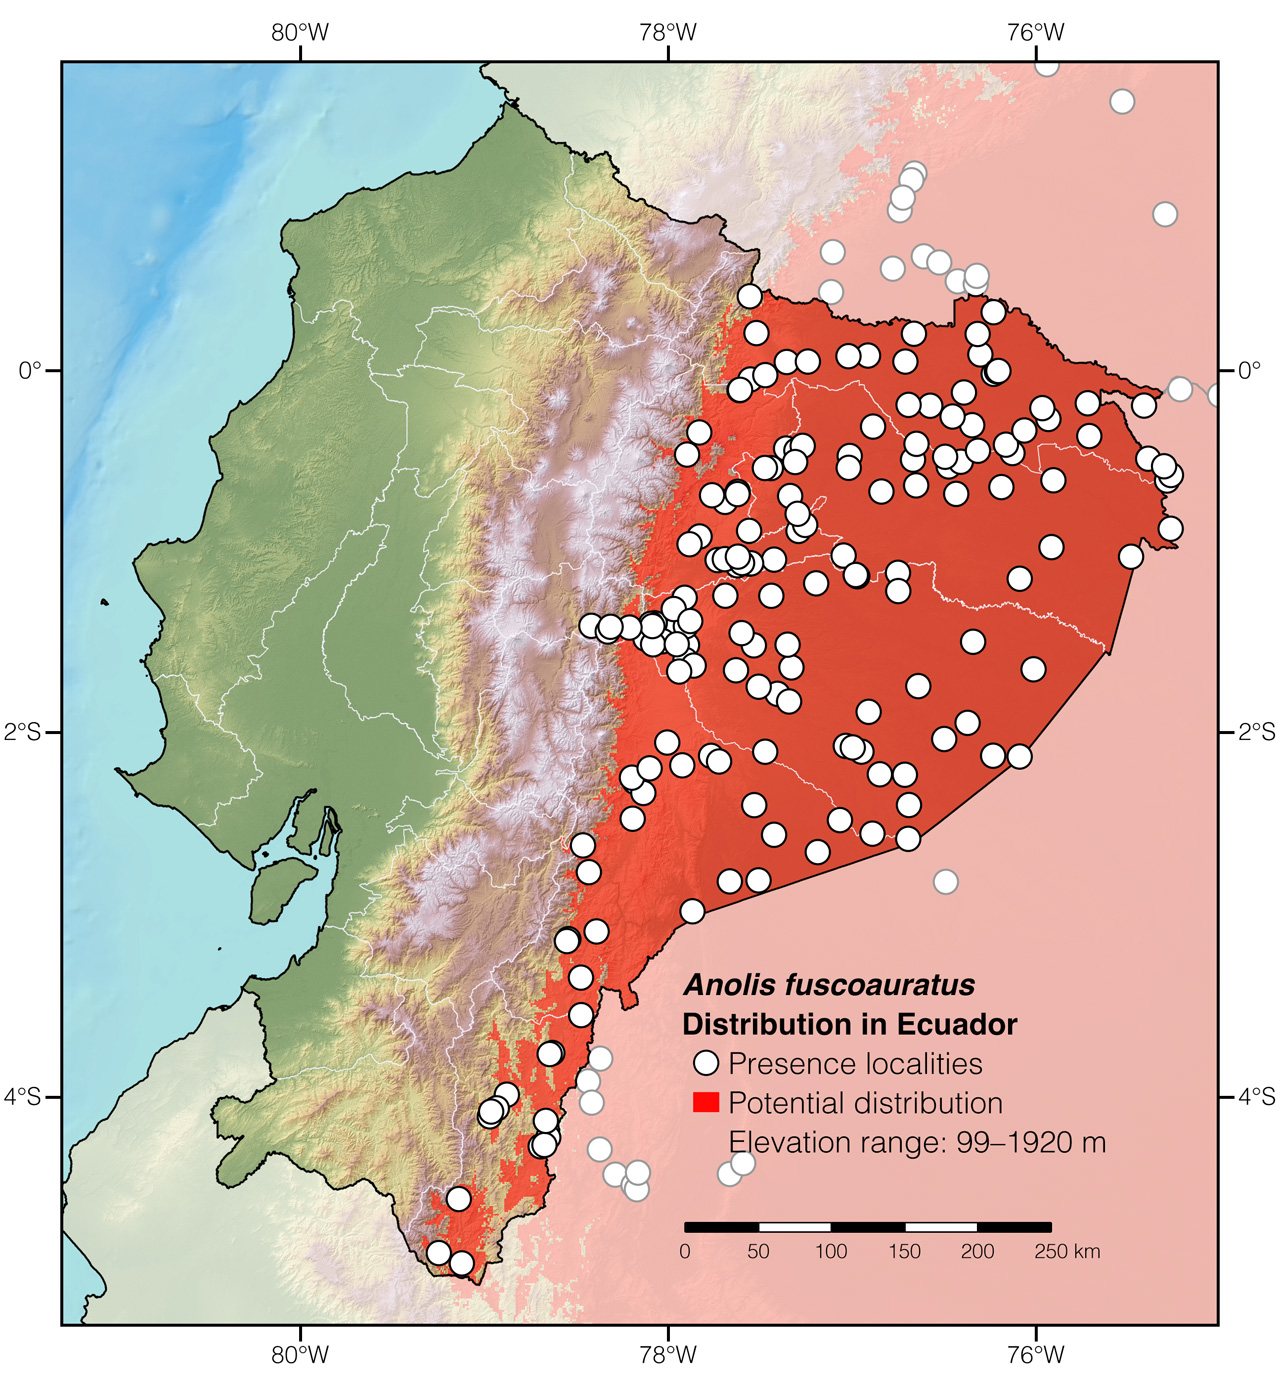 Distribution of Anolis fuscoauratus in Ecuador